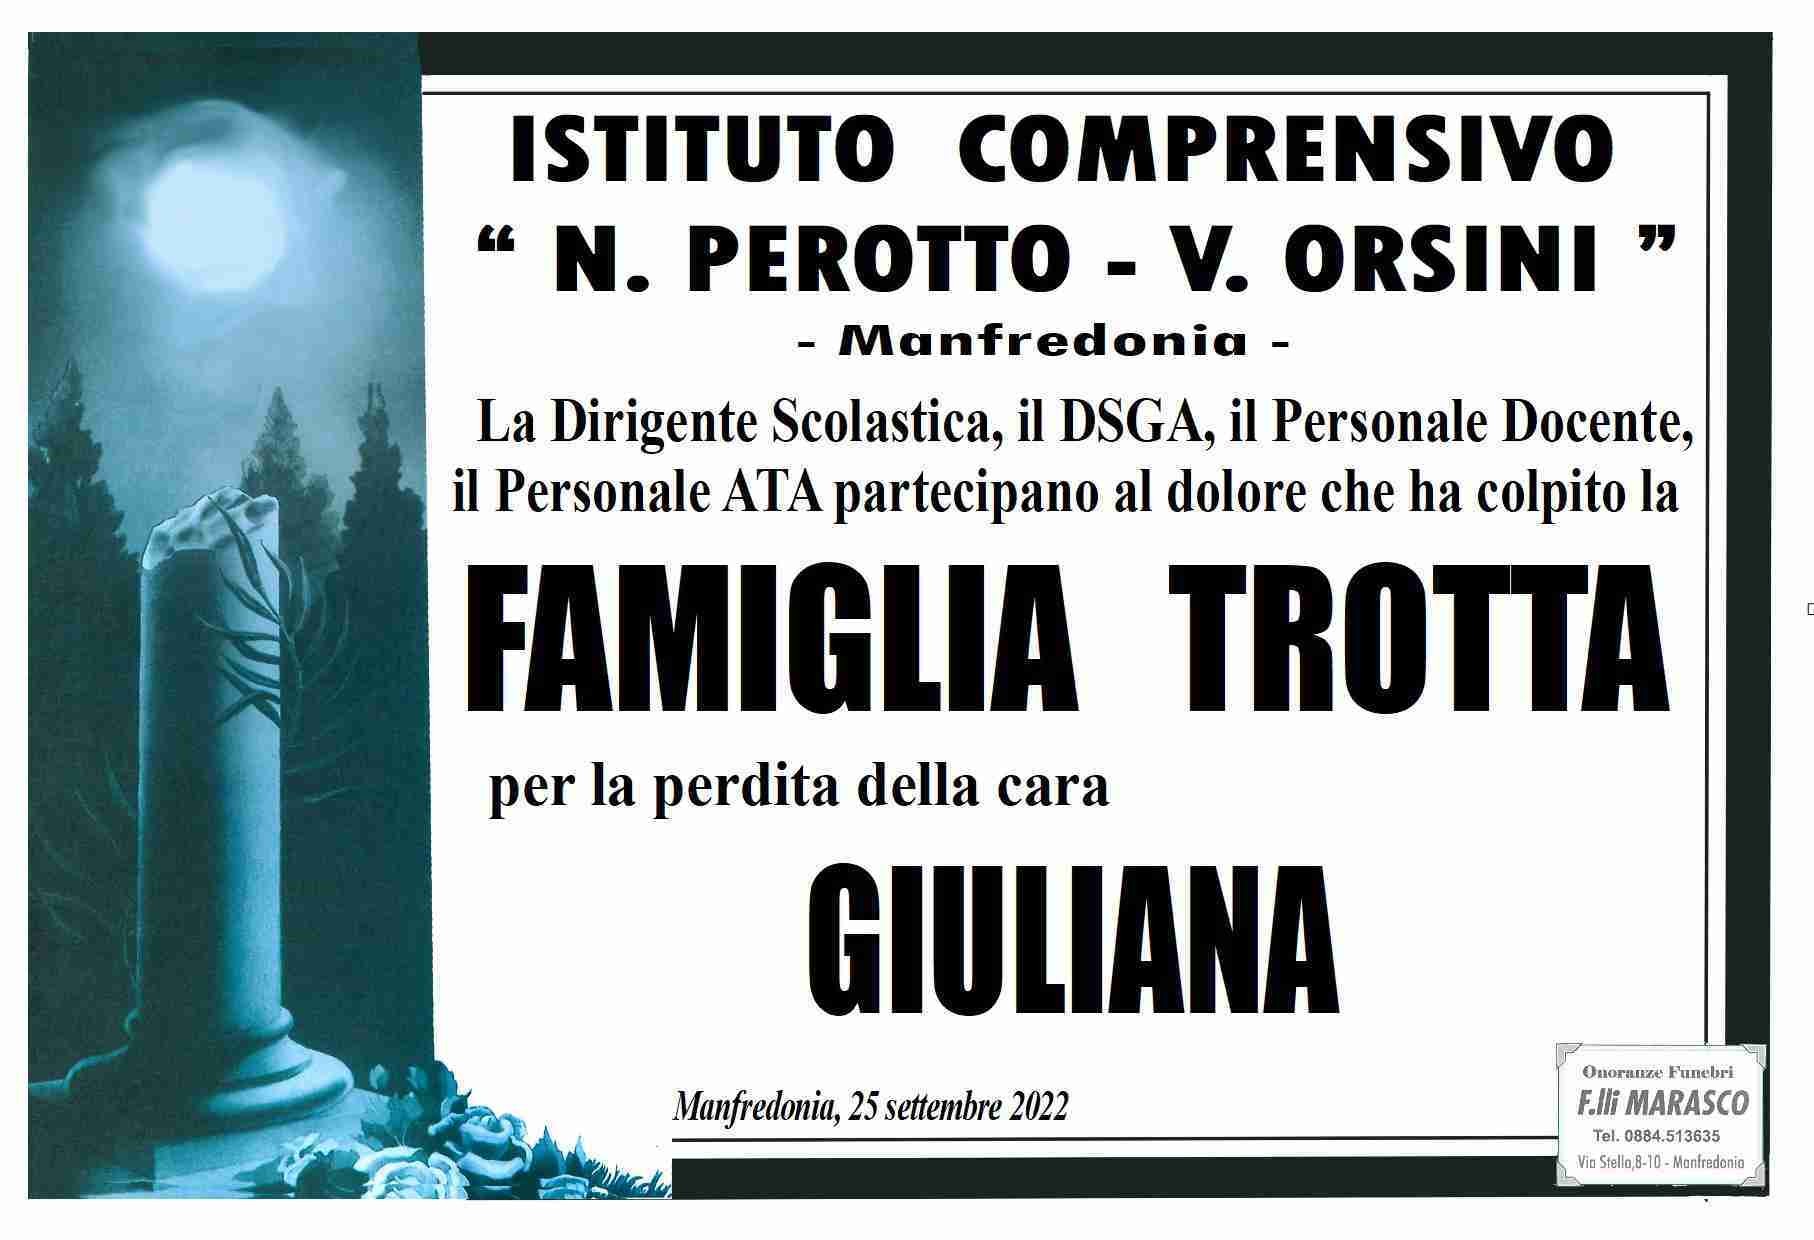 Giuliana Trotta